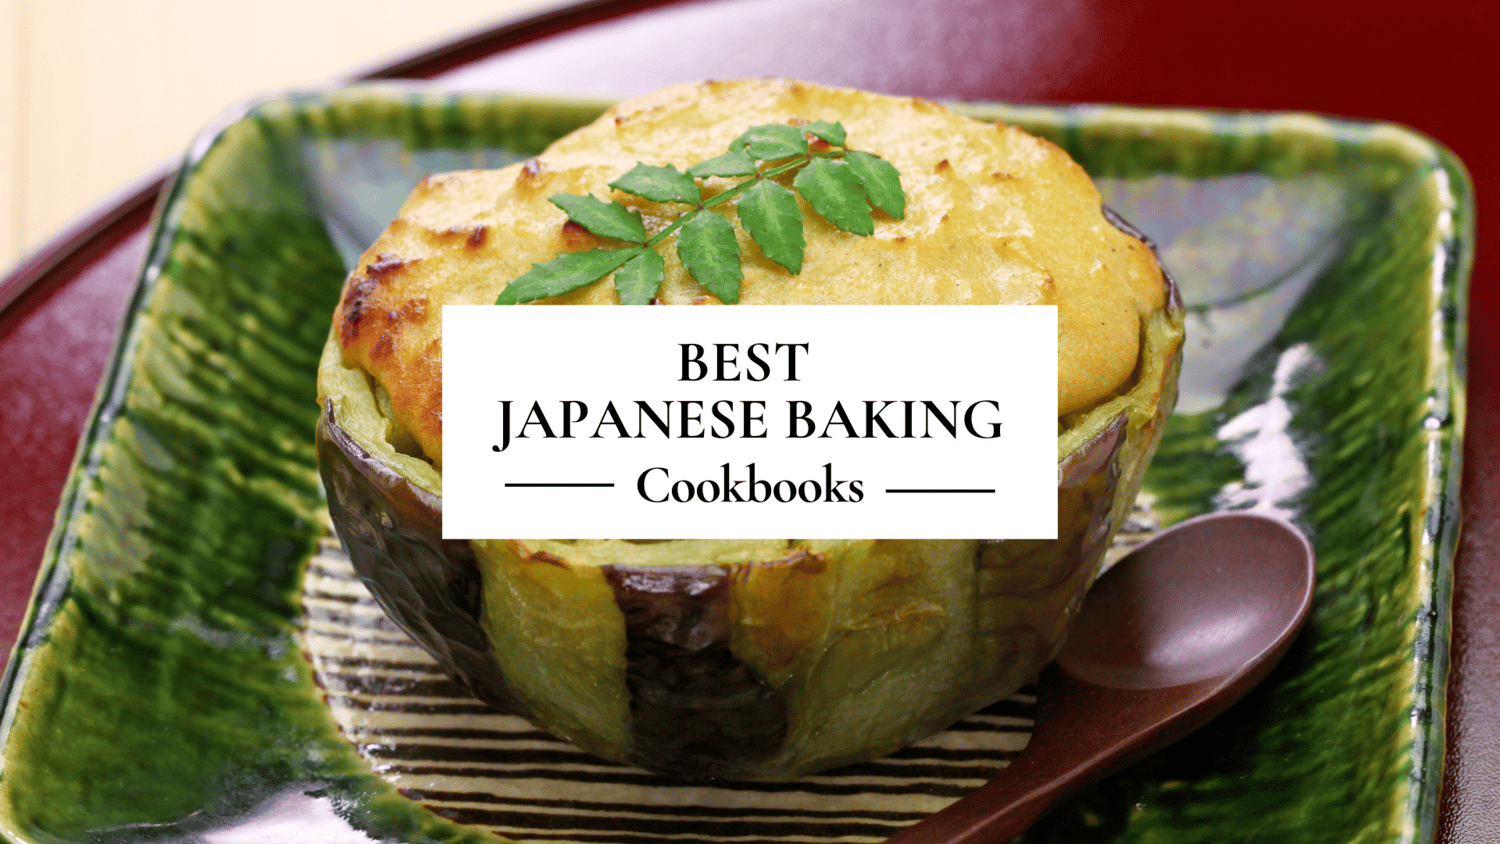 Best Japanese Baking Cookbooks